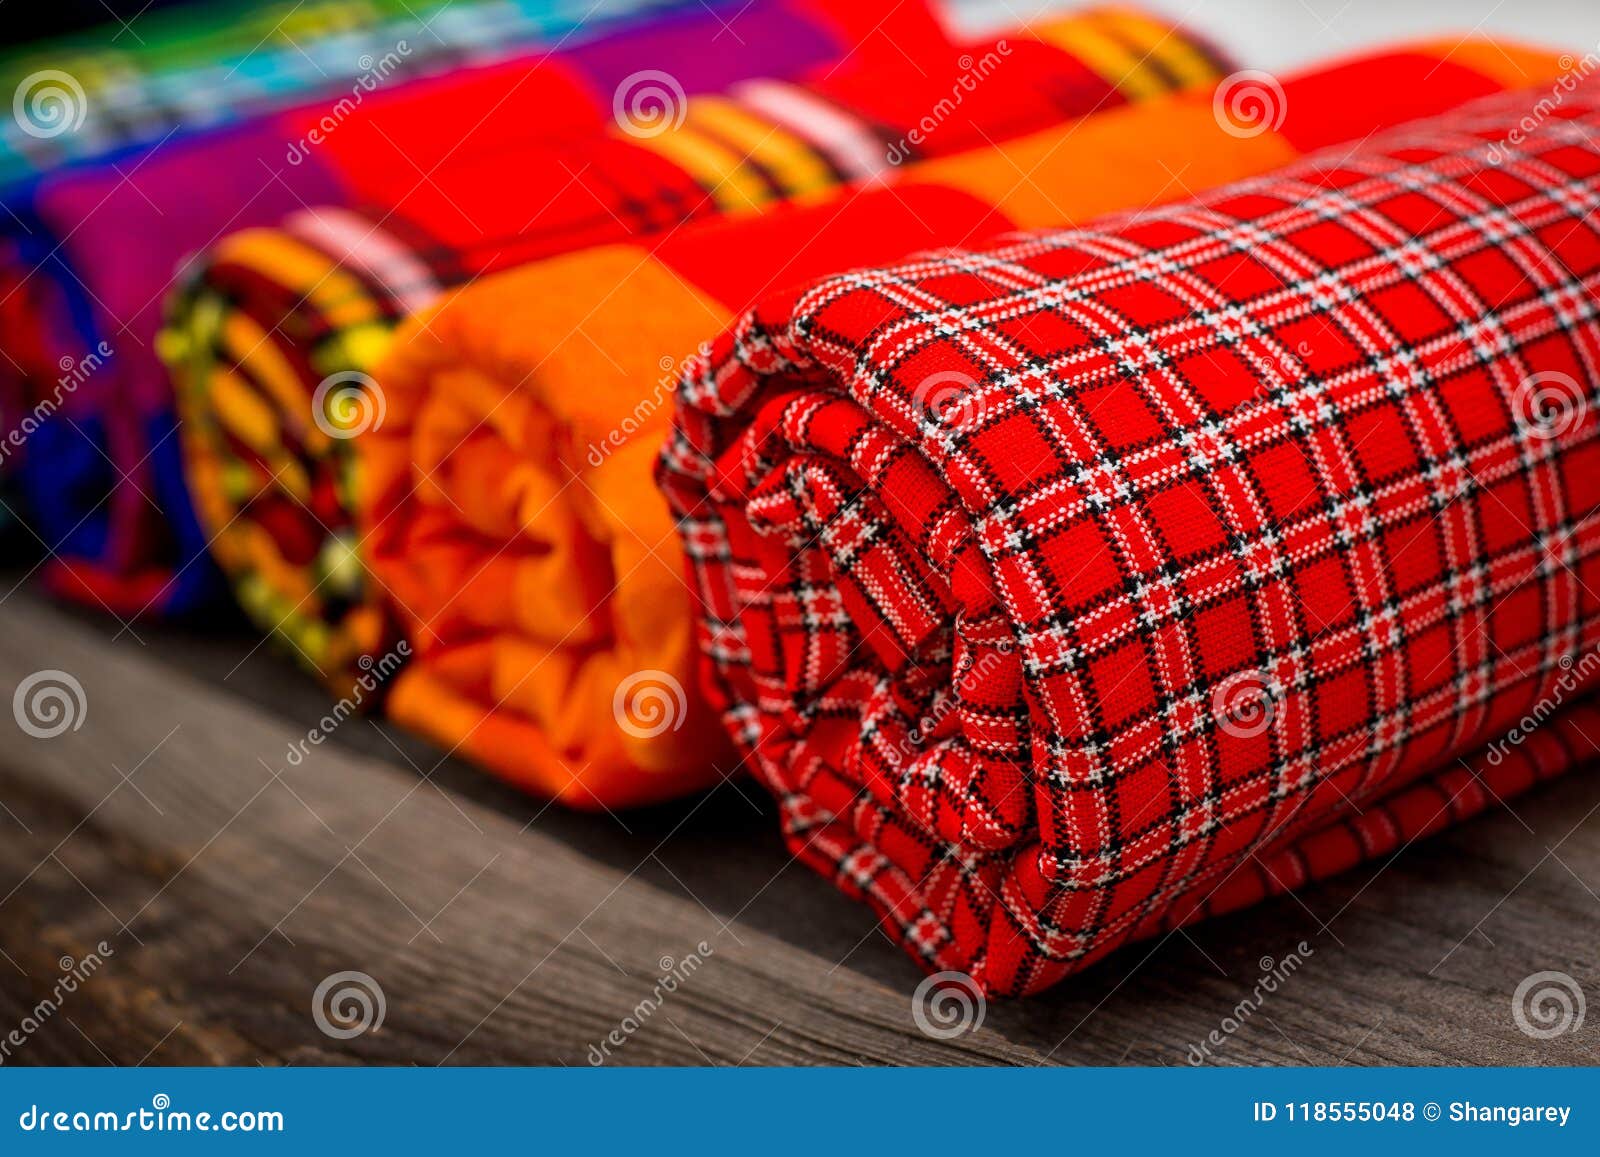 Maasai Blanket Patterns Stock Illustration - Download Image Now